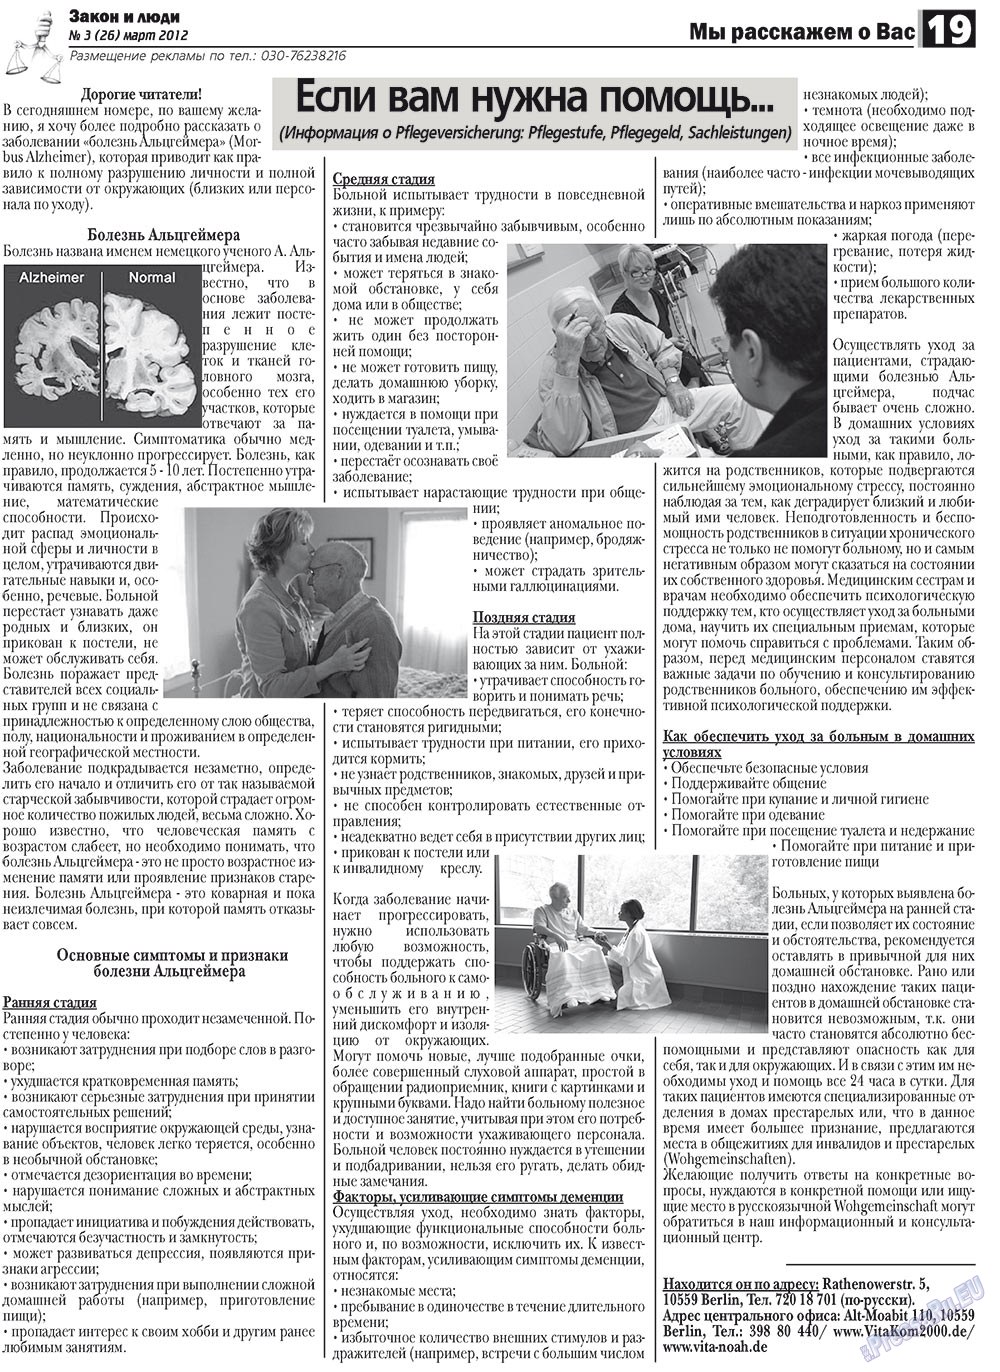 Закон и люди, газета. 2012 №3 стр.19